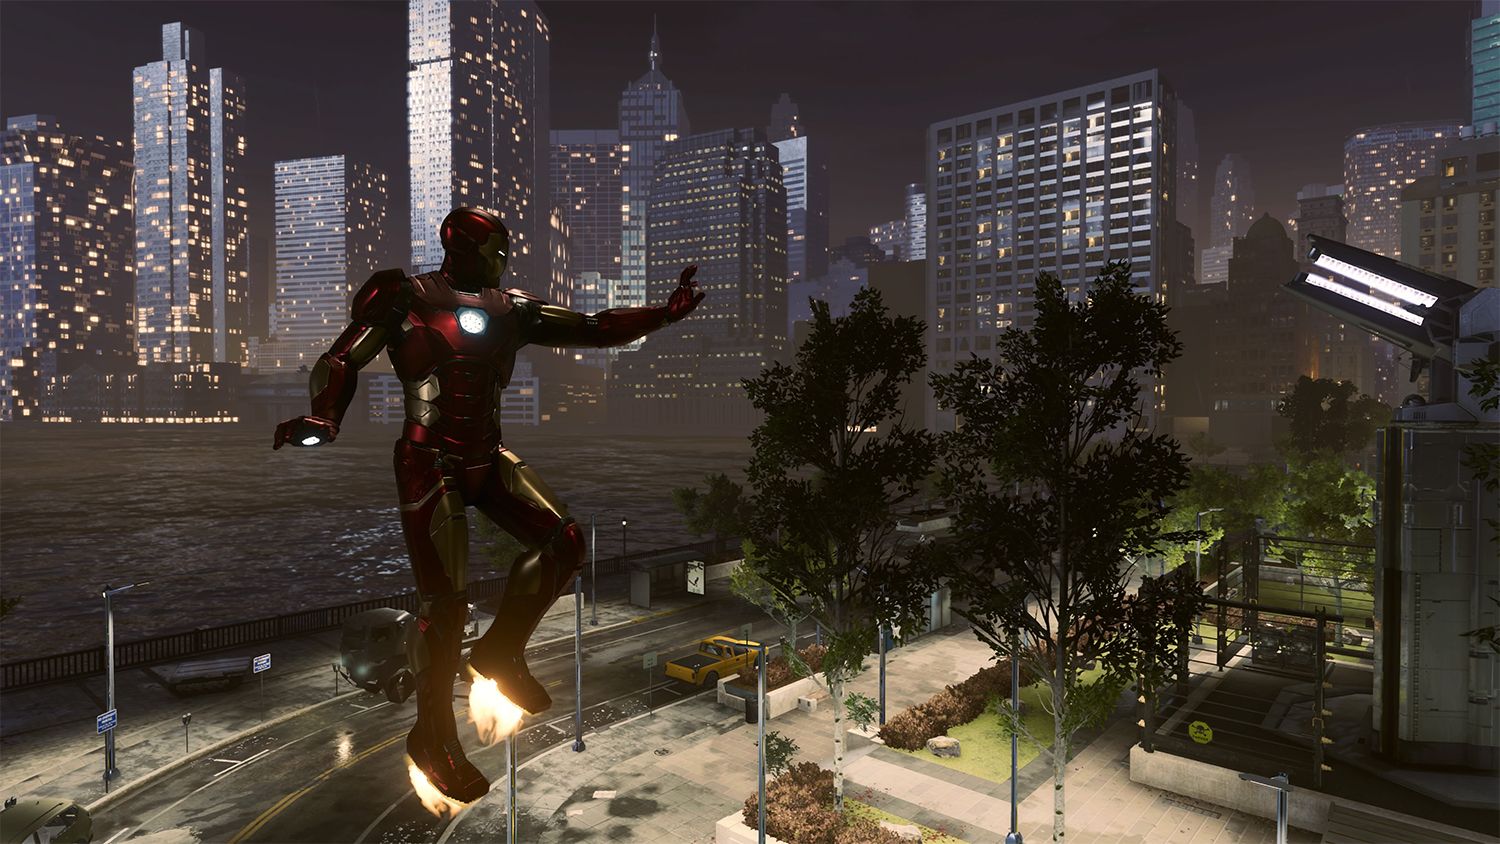 Iron Man city